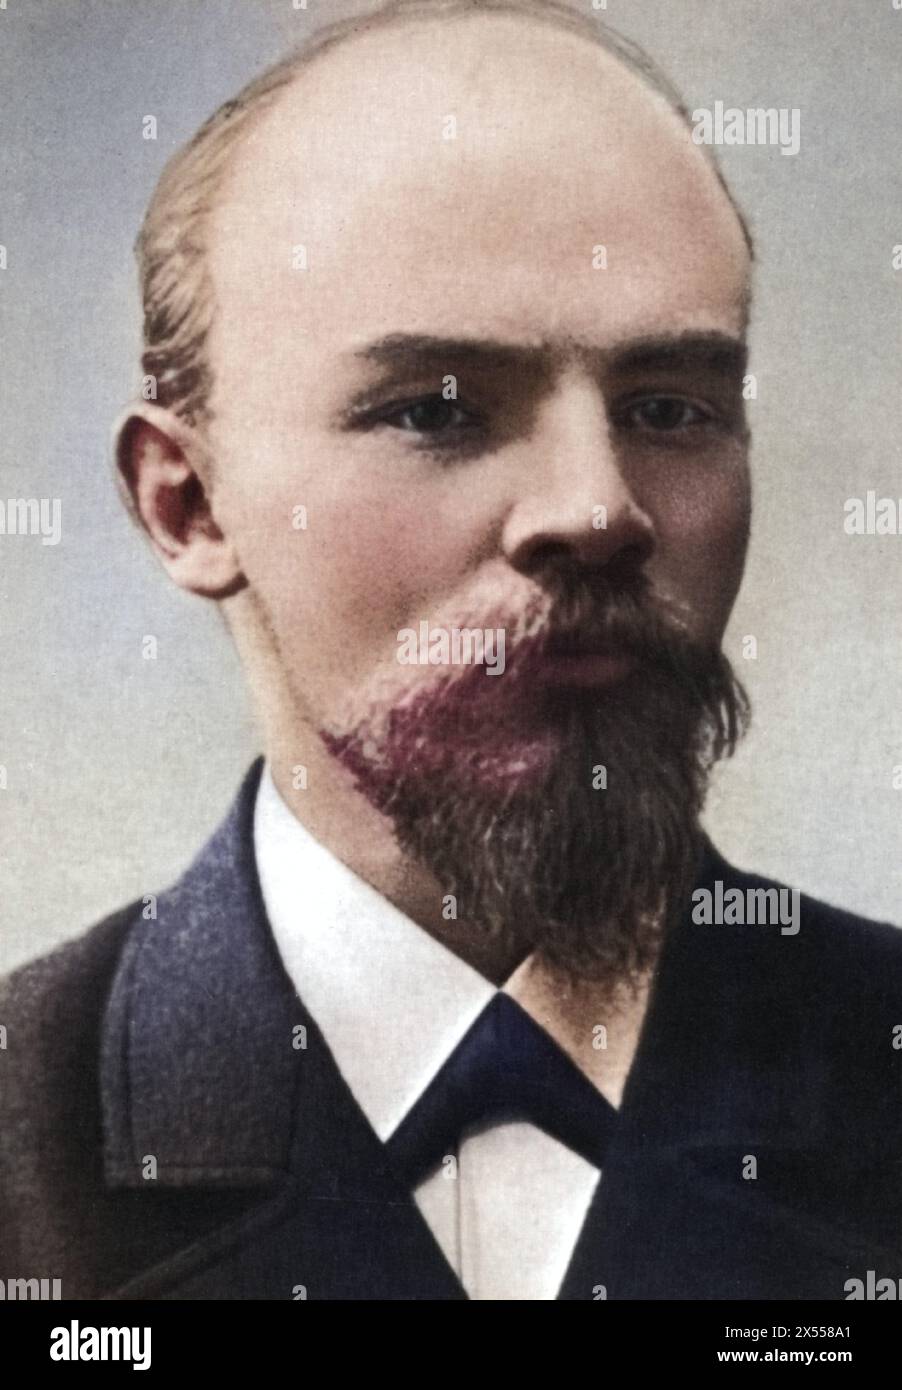 Lénine (Vladimir Ilyich Oulianov), 22.4.1870 - 21.1,1924, homme politique russe, portrait, février 1900, INFORMATIONS-AUTORISATION-DROITS-SUPPLÉMENTAIRES-NON-DISPONIBLES Banque D'Images